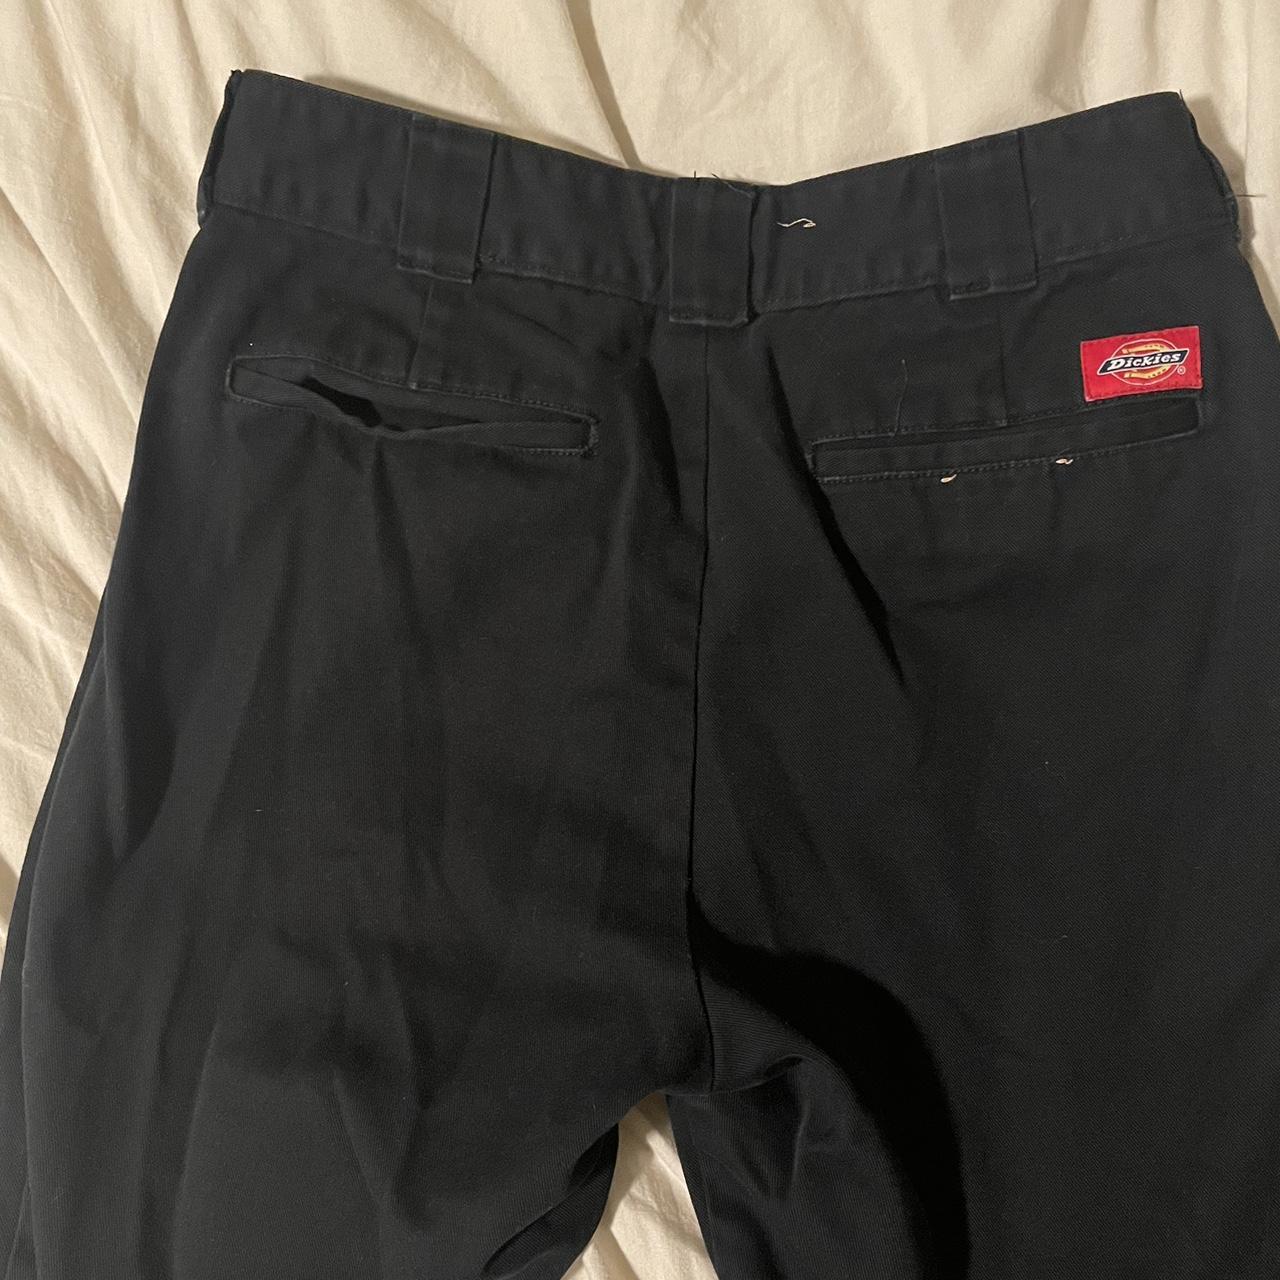 size 7/28” black dickies pants - Depop